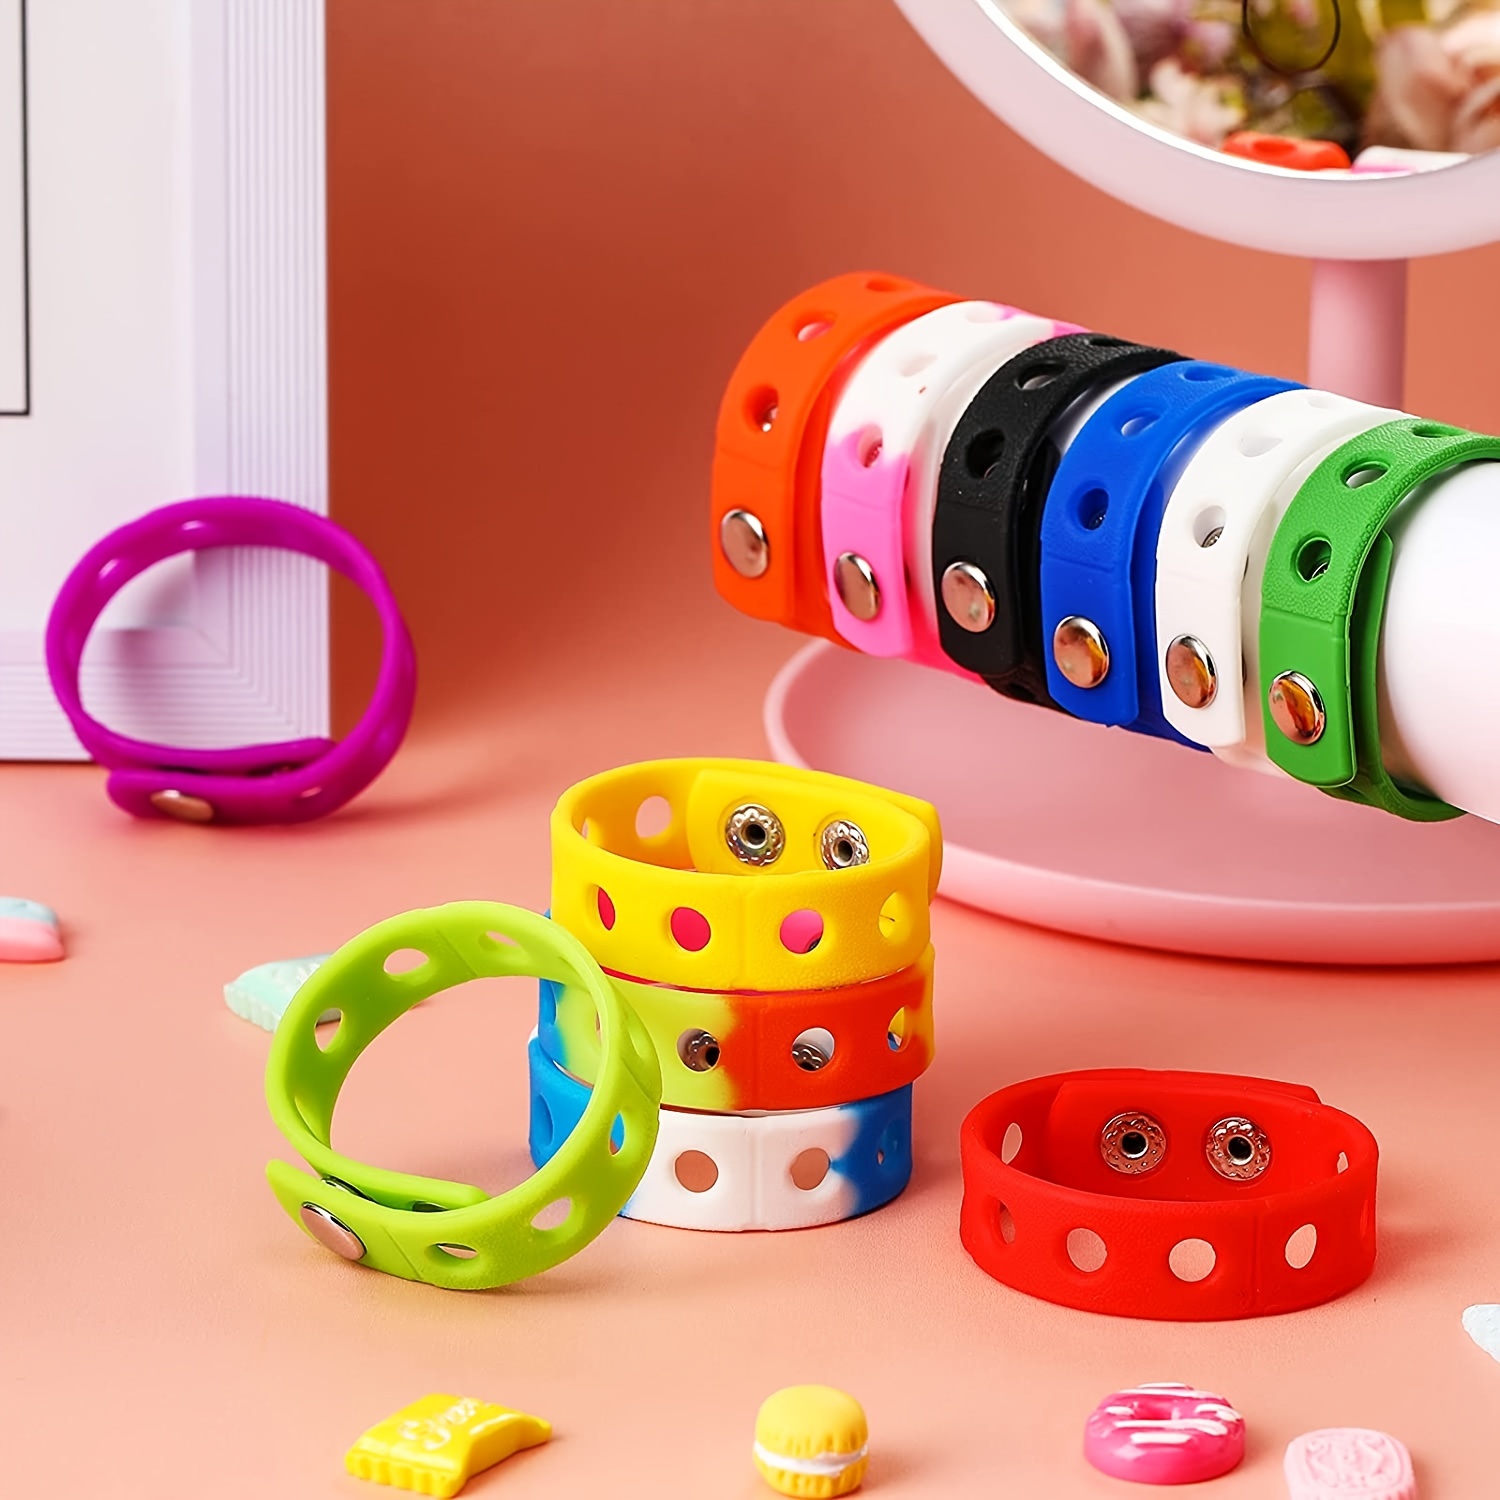 48PCS Tie Dye Party Favors Slap, Colorful Wristbands for Kids